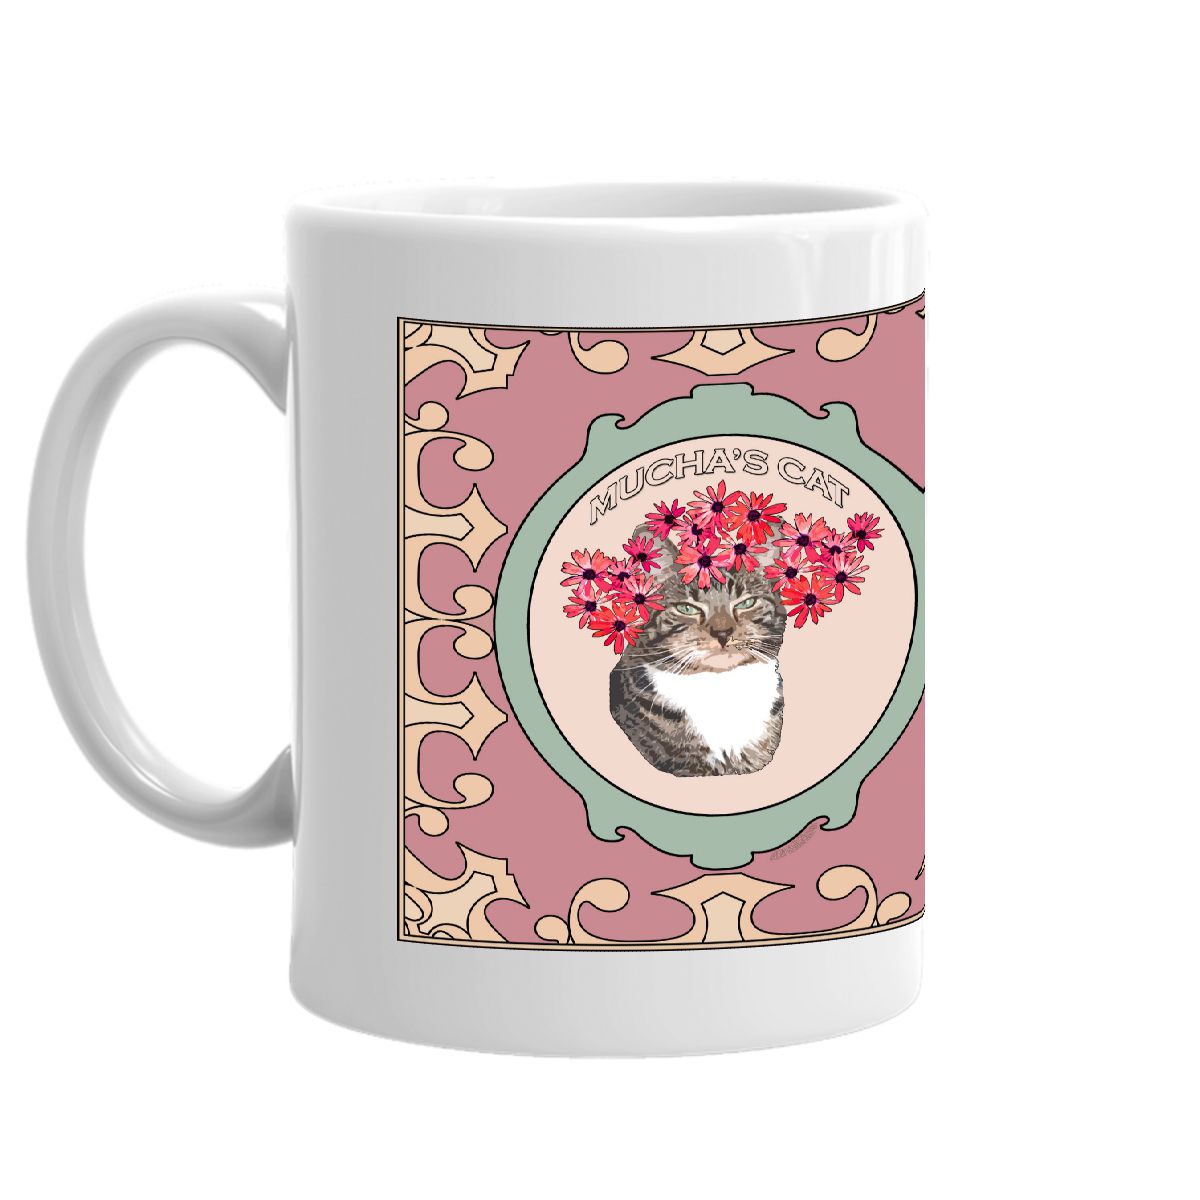 Mucha's Cat coffee mug